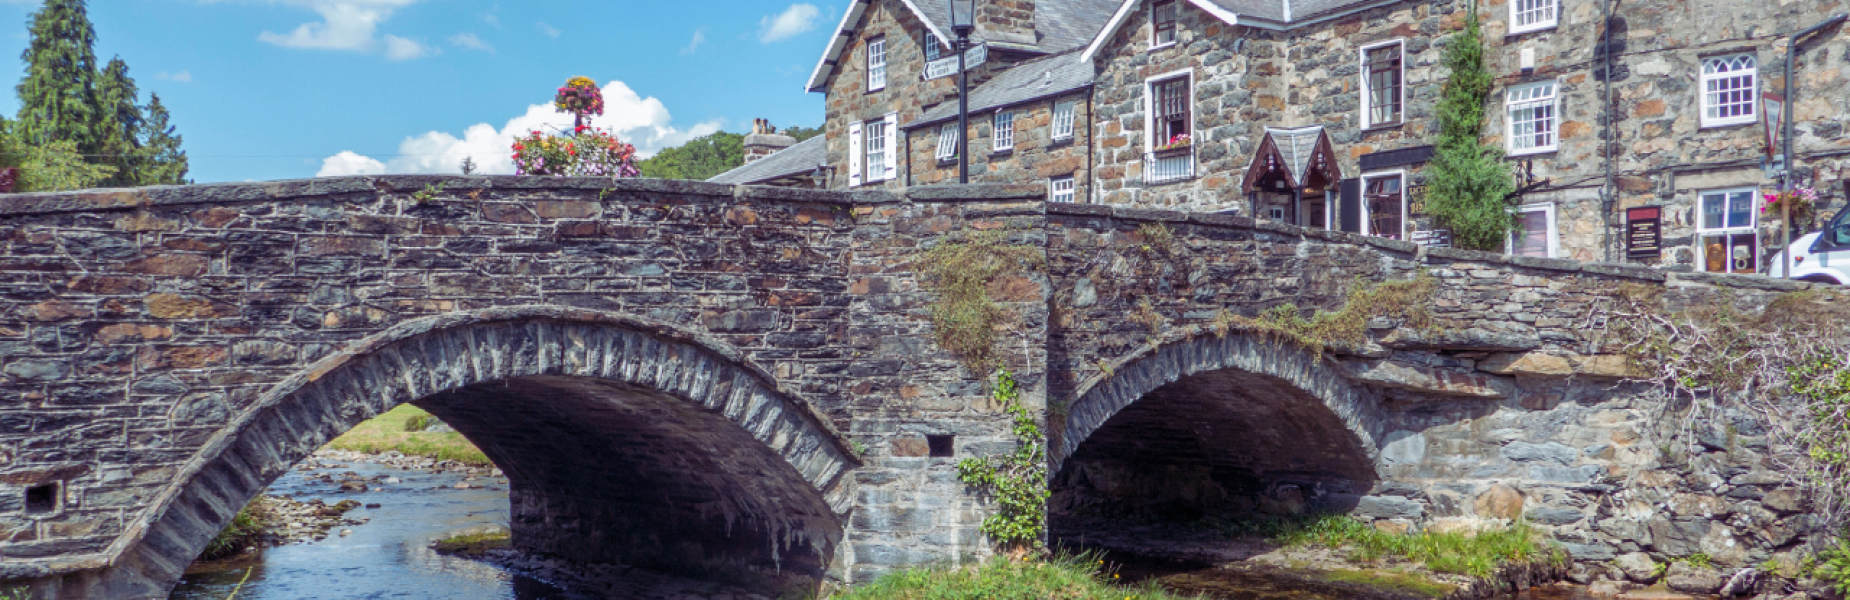 Bridge at Beddgelert, Gwynedd, North Wales